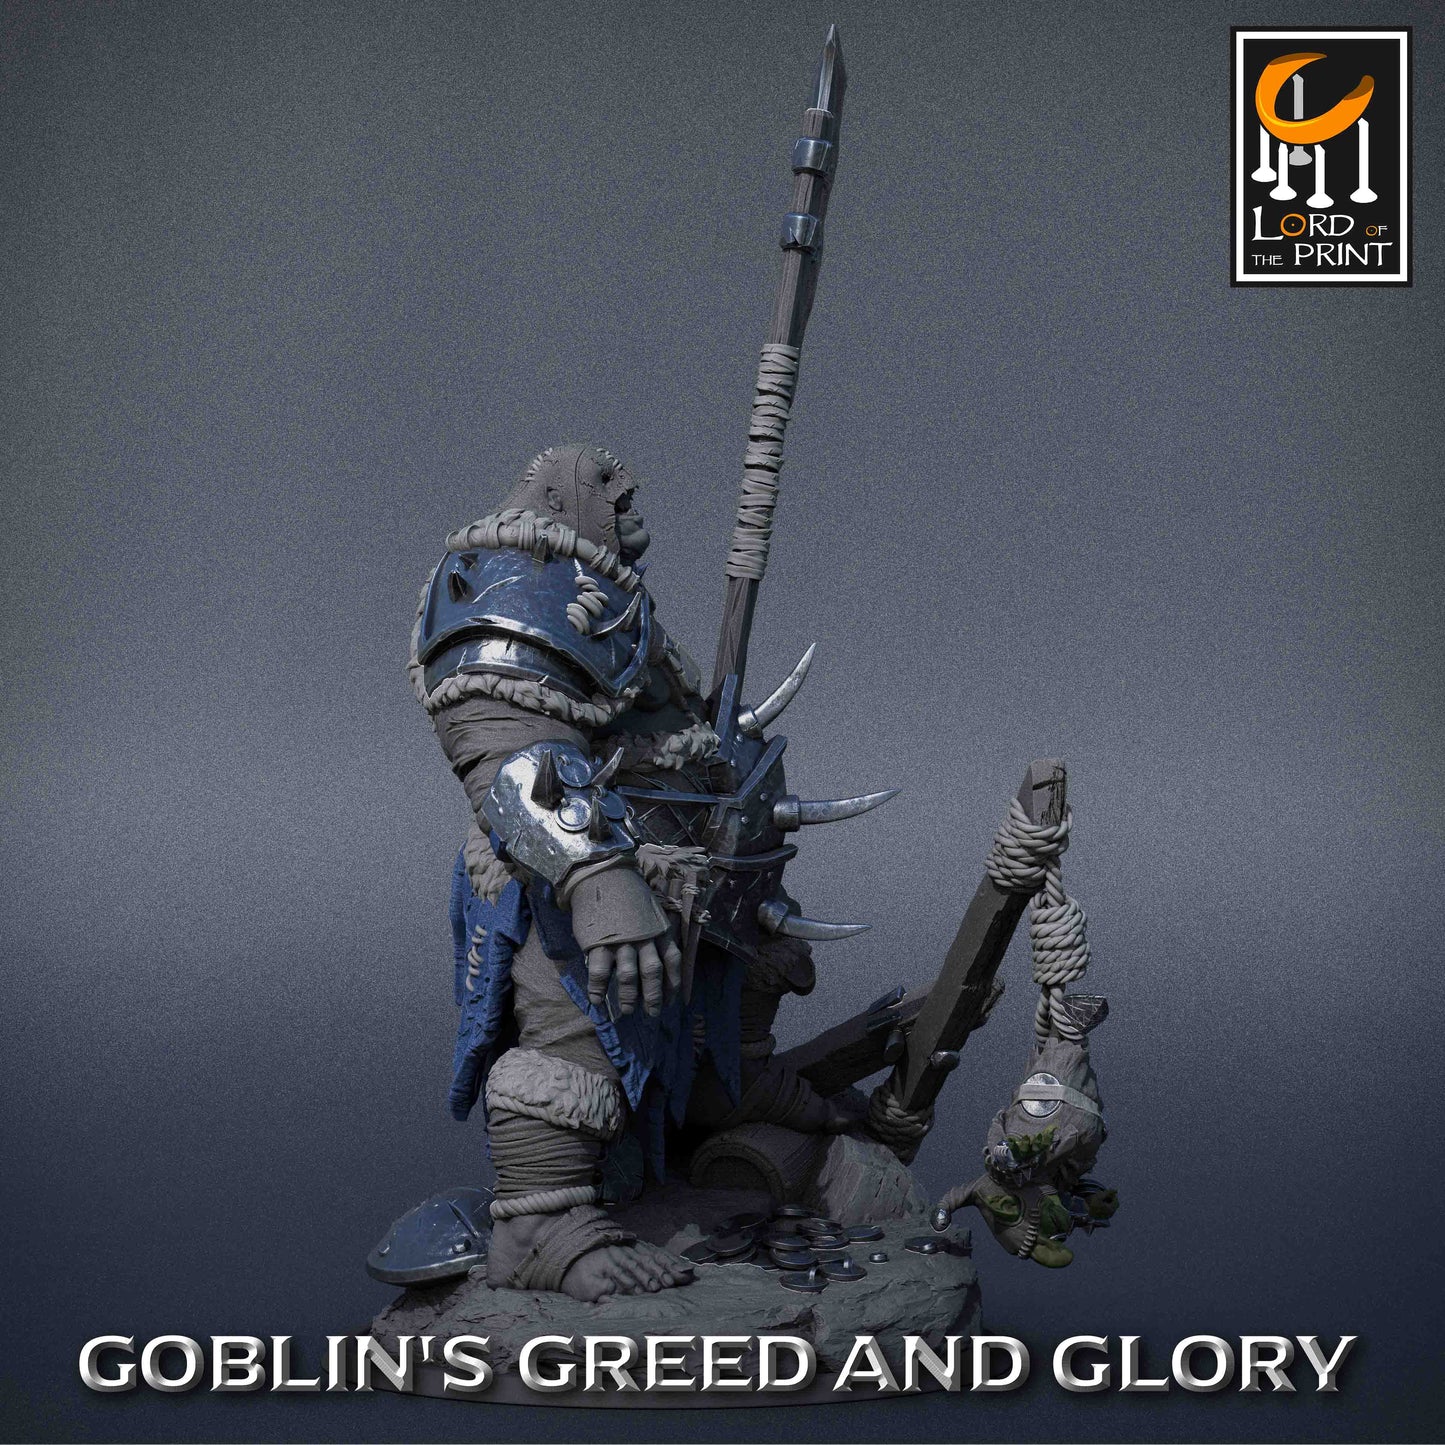 Goblin gegen Oger Miniatur | 2 Posen | Lord of the Print